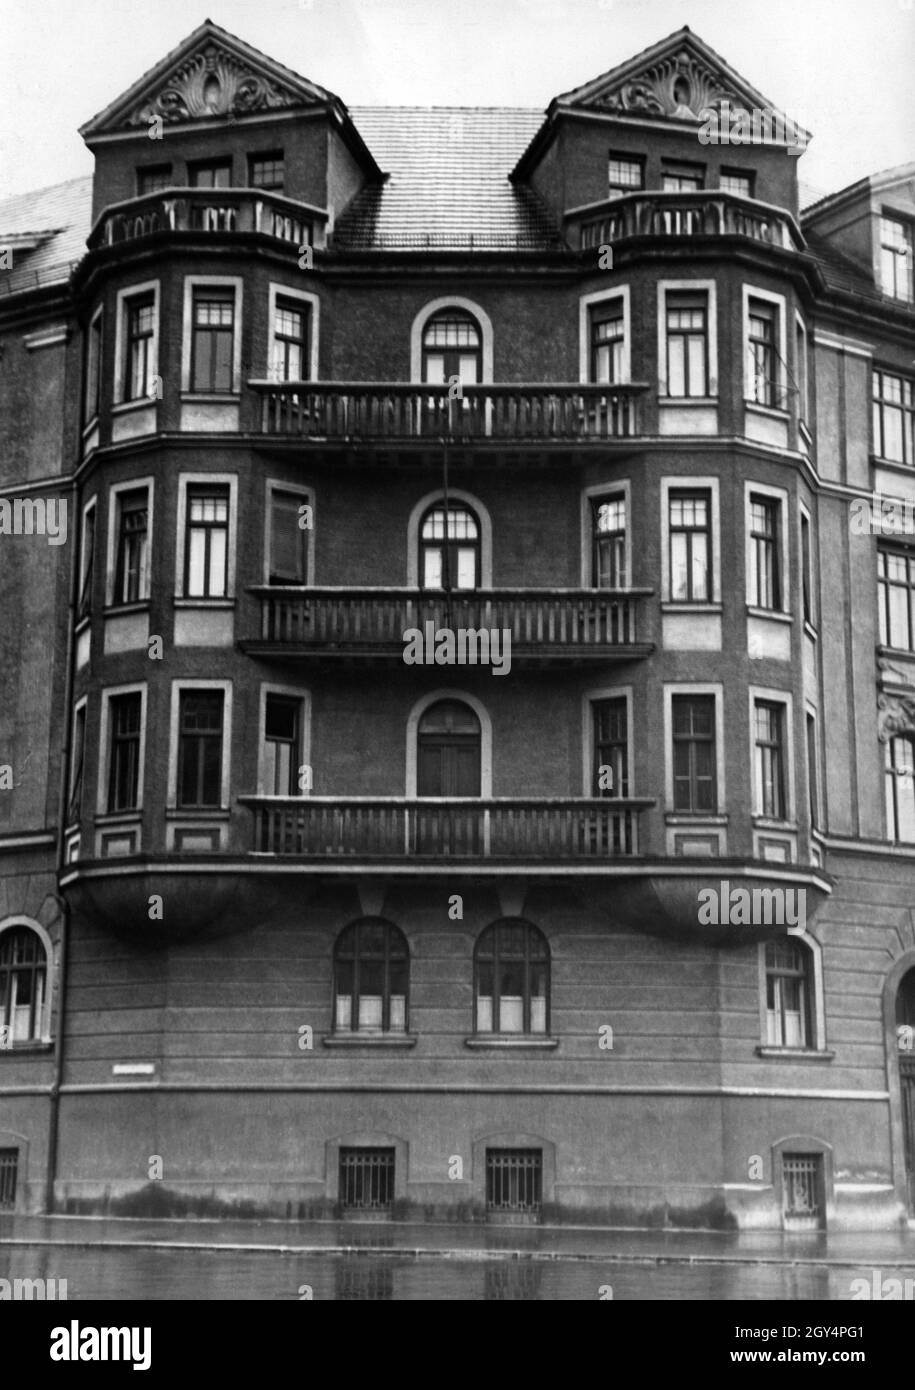 Adolf Hitler visse in questa casa a Prinzregentenplatz 16 a Monaco, che oggi ospita una stazione di polizia, fino al 1939. Dopo di che, i suoi soggiorni in casa, che il NSDAP ha acquistato nel 1936, sono diventati sempre più rari. Tuttavia, è stato registrato qui fino al 1945. Hitler occupava un appartamento di nove camere al secondo piano. A volte condivideva l'appartamento con la nipote Gerdi Raubal, il cui suicidio è oggetto di numerose leggende. Il campanello leggeva Winter. [traduzione automatizzata] Foto Stock